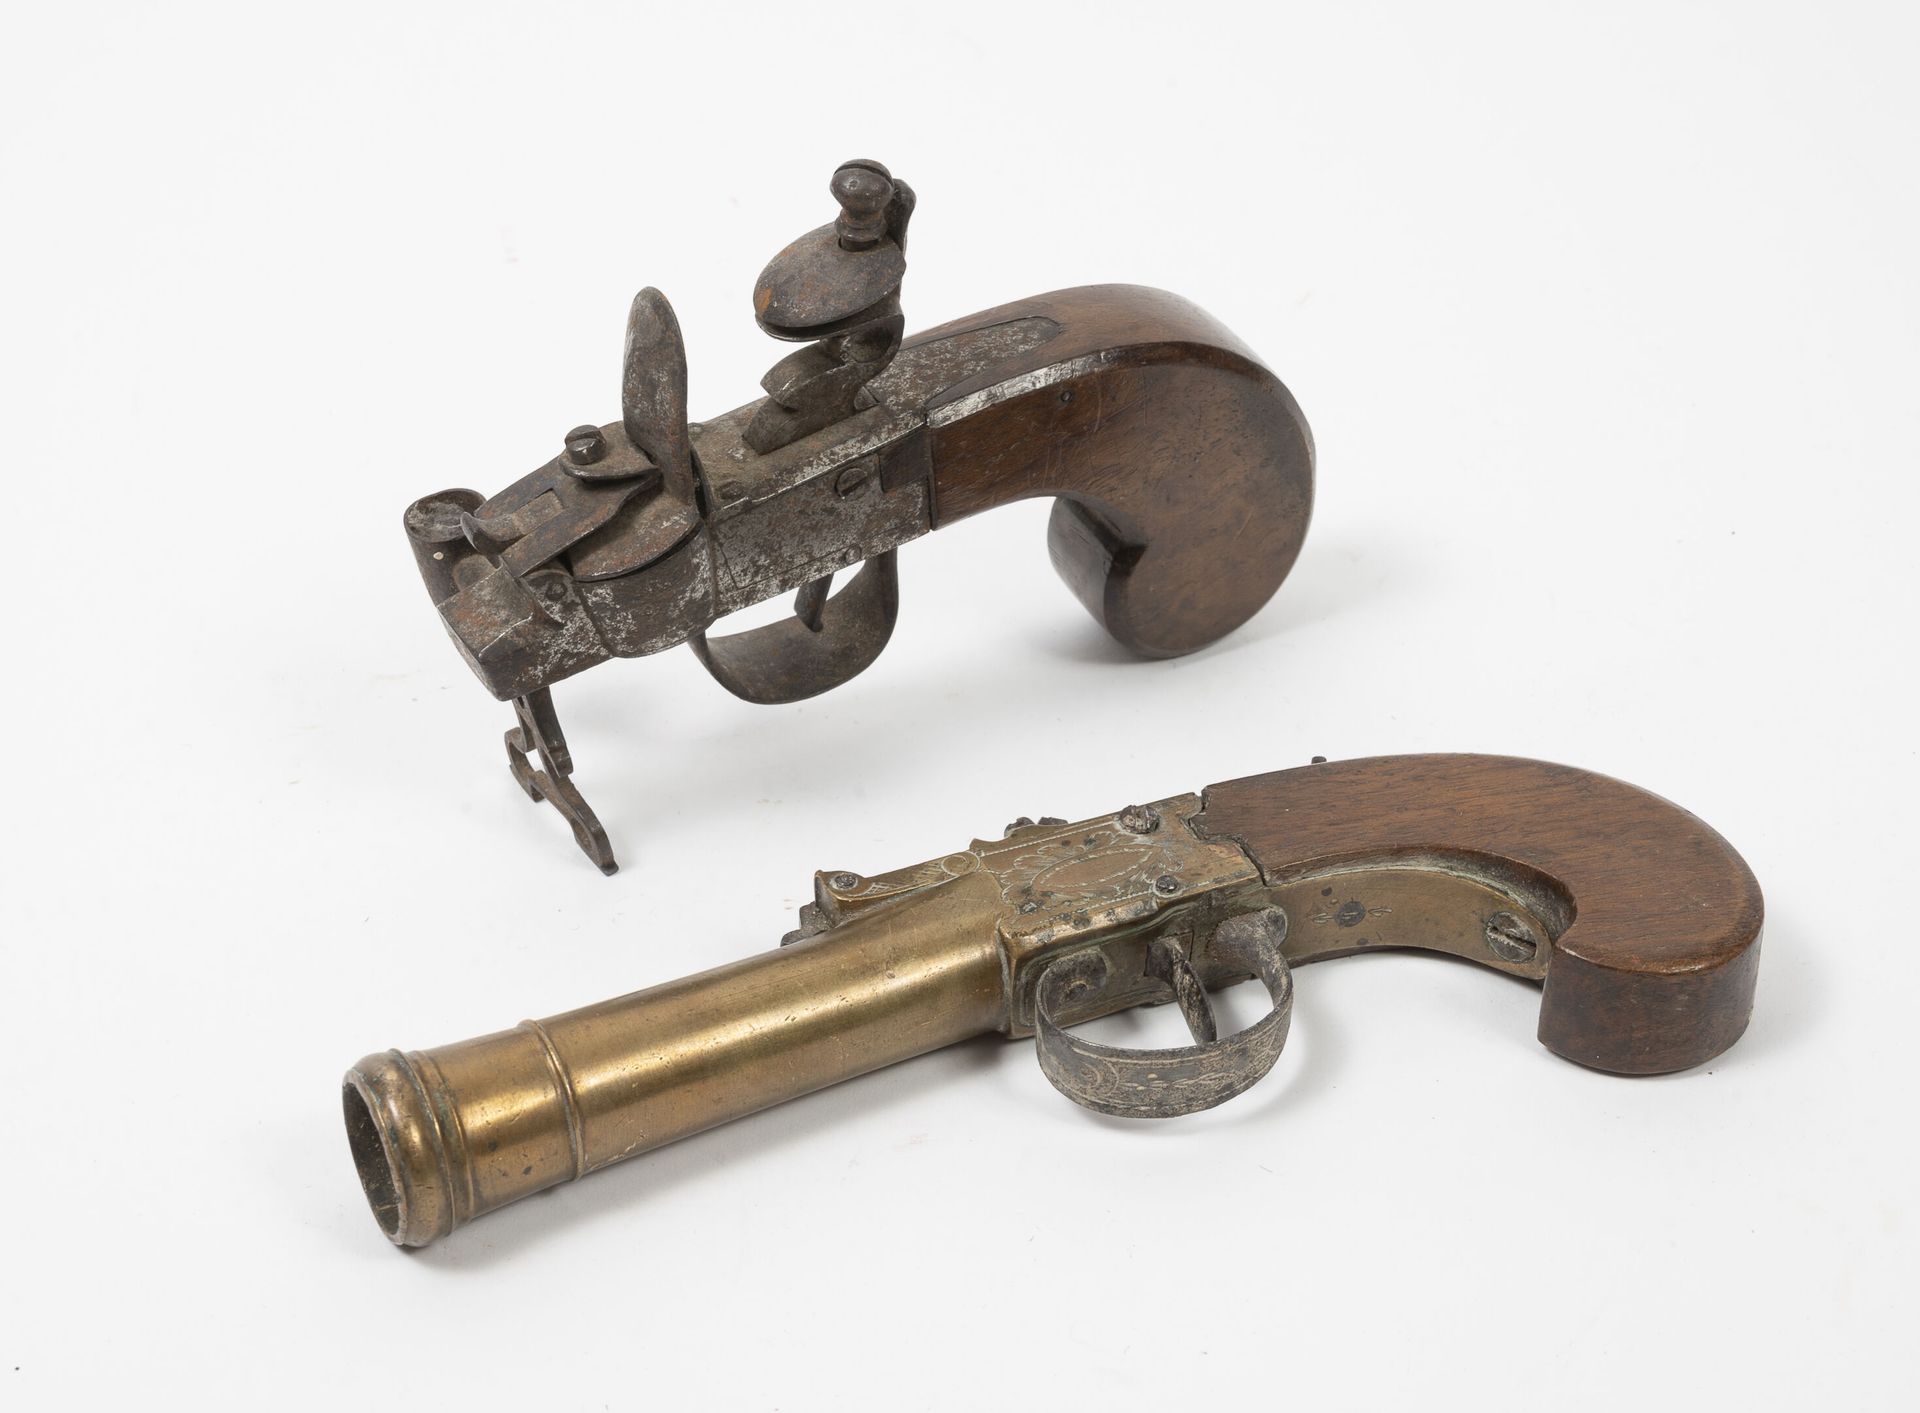 ANGLETERRE (?), début du XIXème siècle Marine pistol with box.

Smooth bronze ba&hellip;